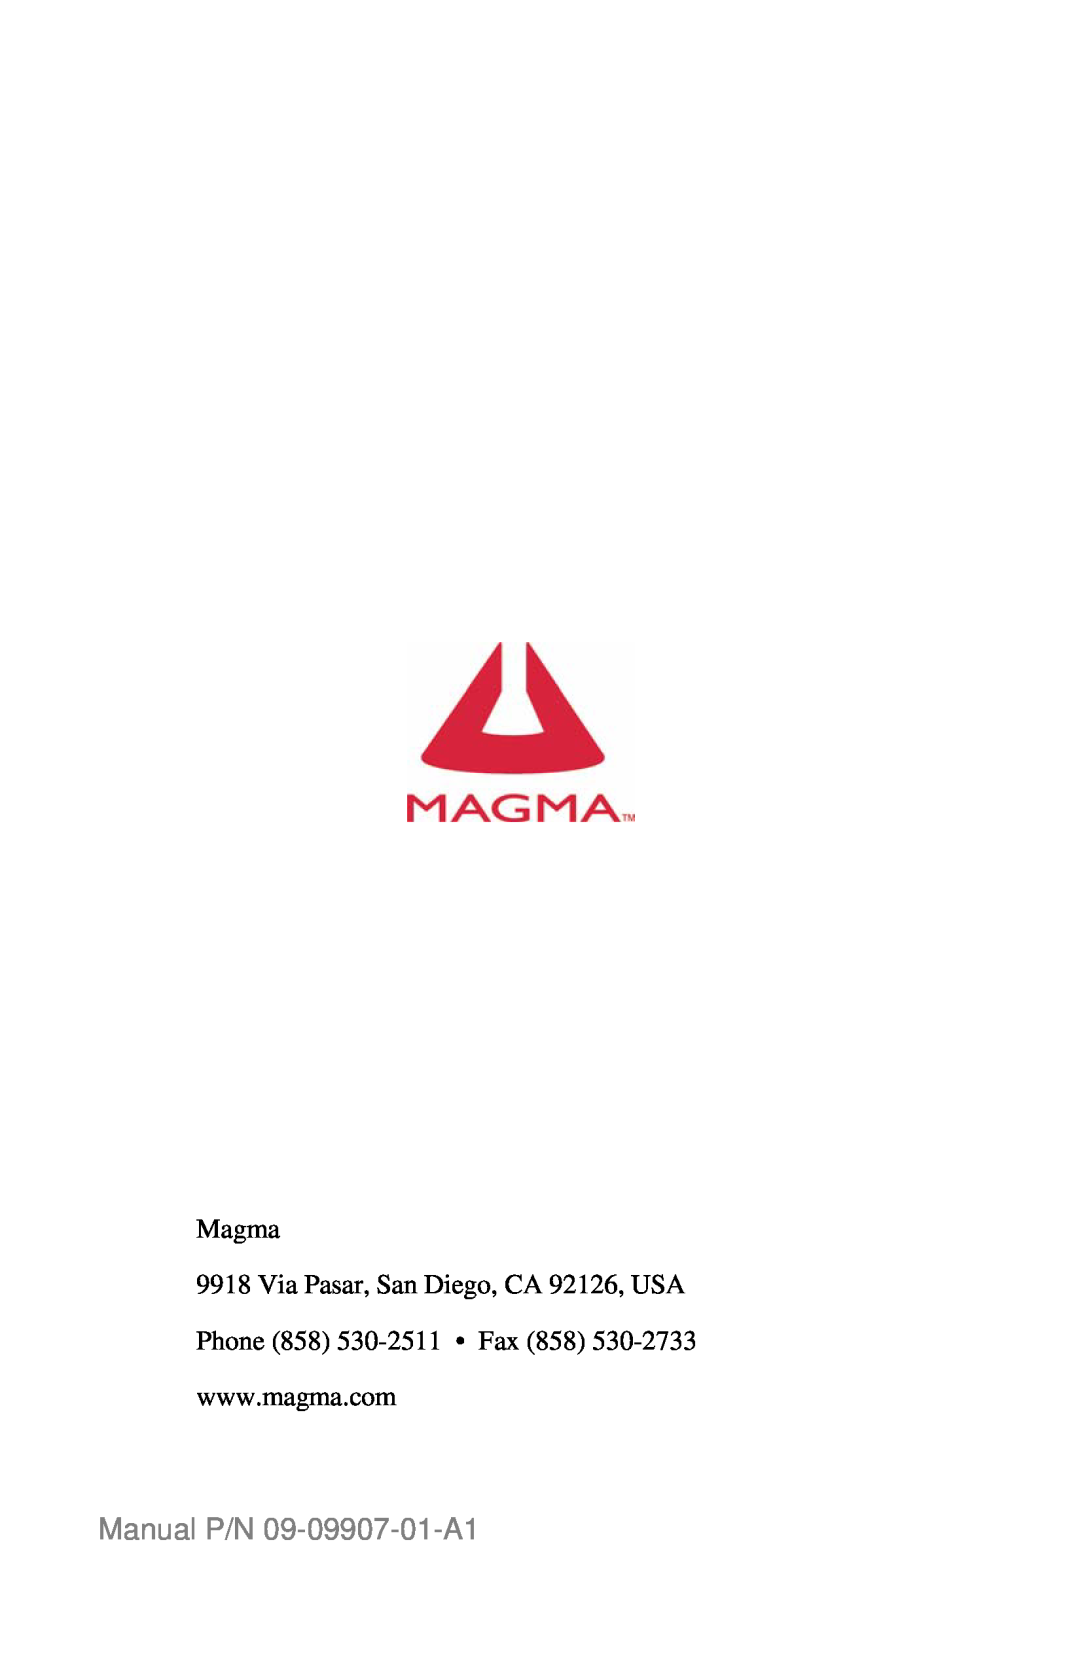 Magma P13RR-TEL Manual P/N 09-09907-01-A1, Magma 9918 Via Pasar, San Diego, CA 92126, USA, Phone 858 530-2511 Fax 858 